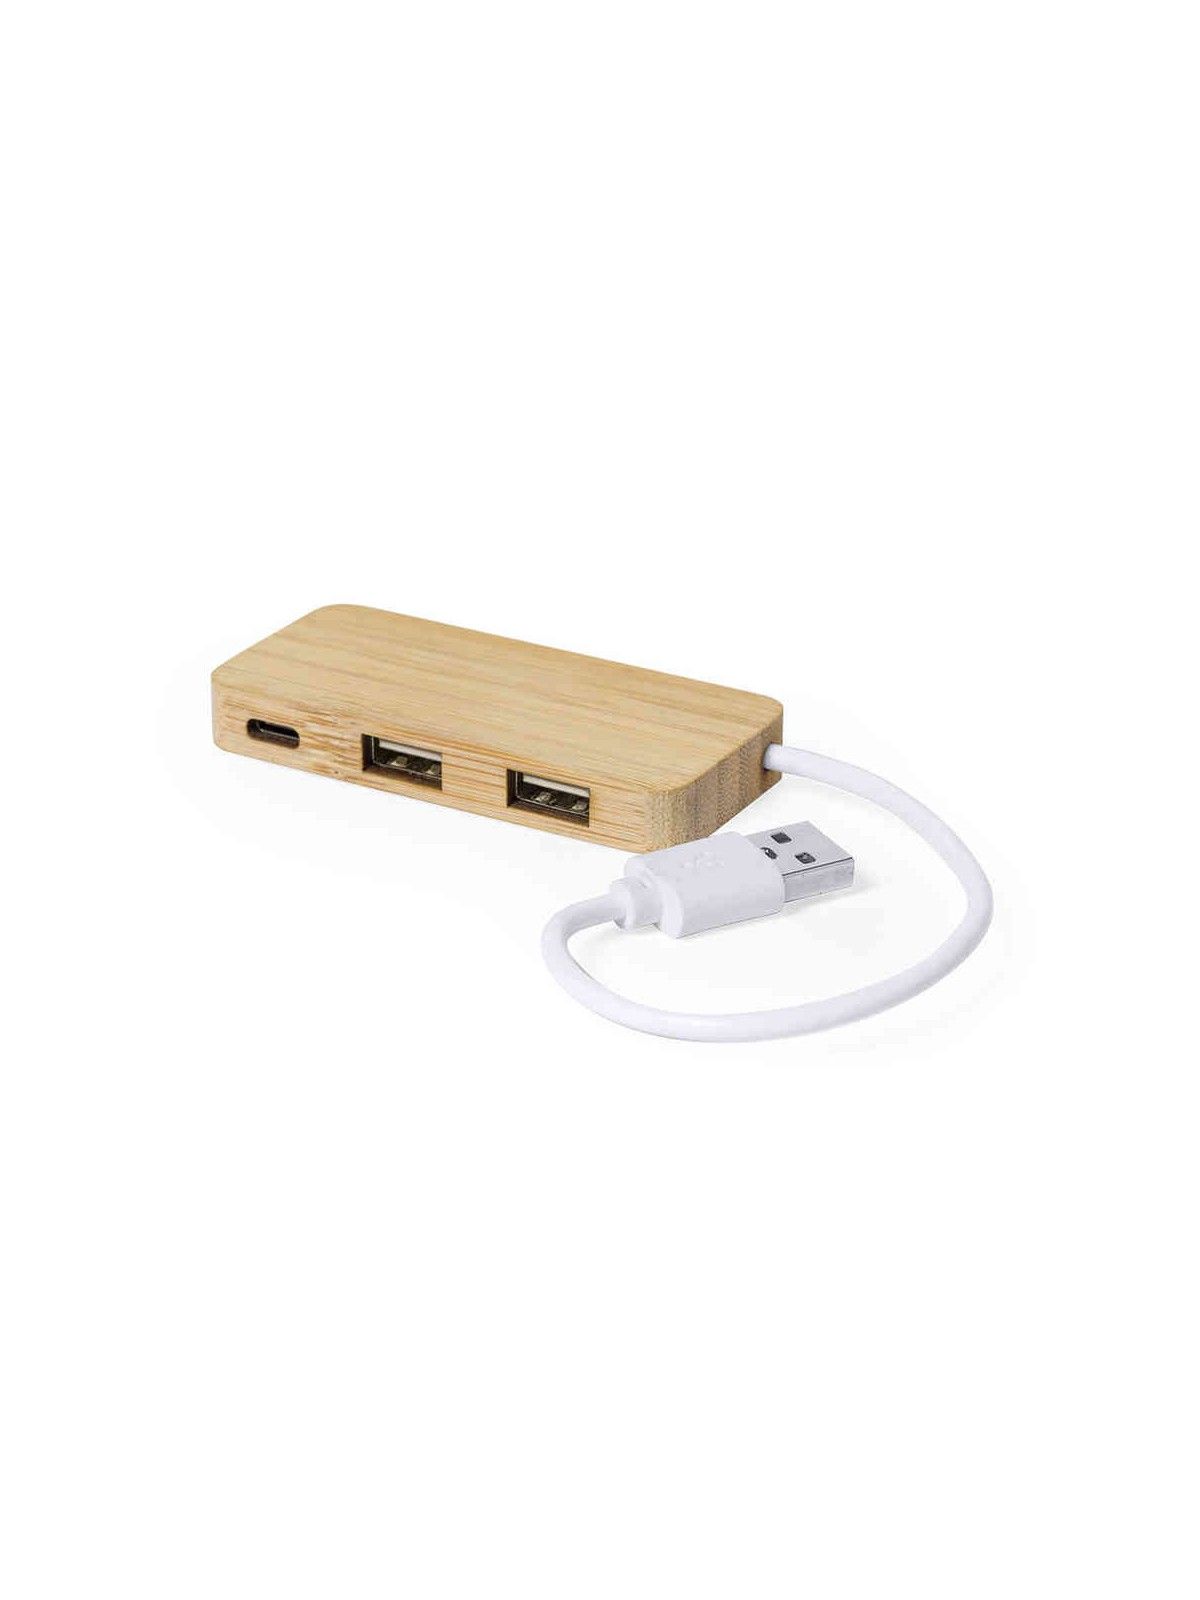 70-354 Port USB publicitaire en bambou personnalisé